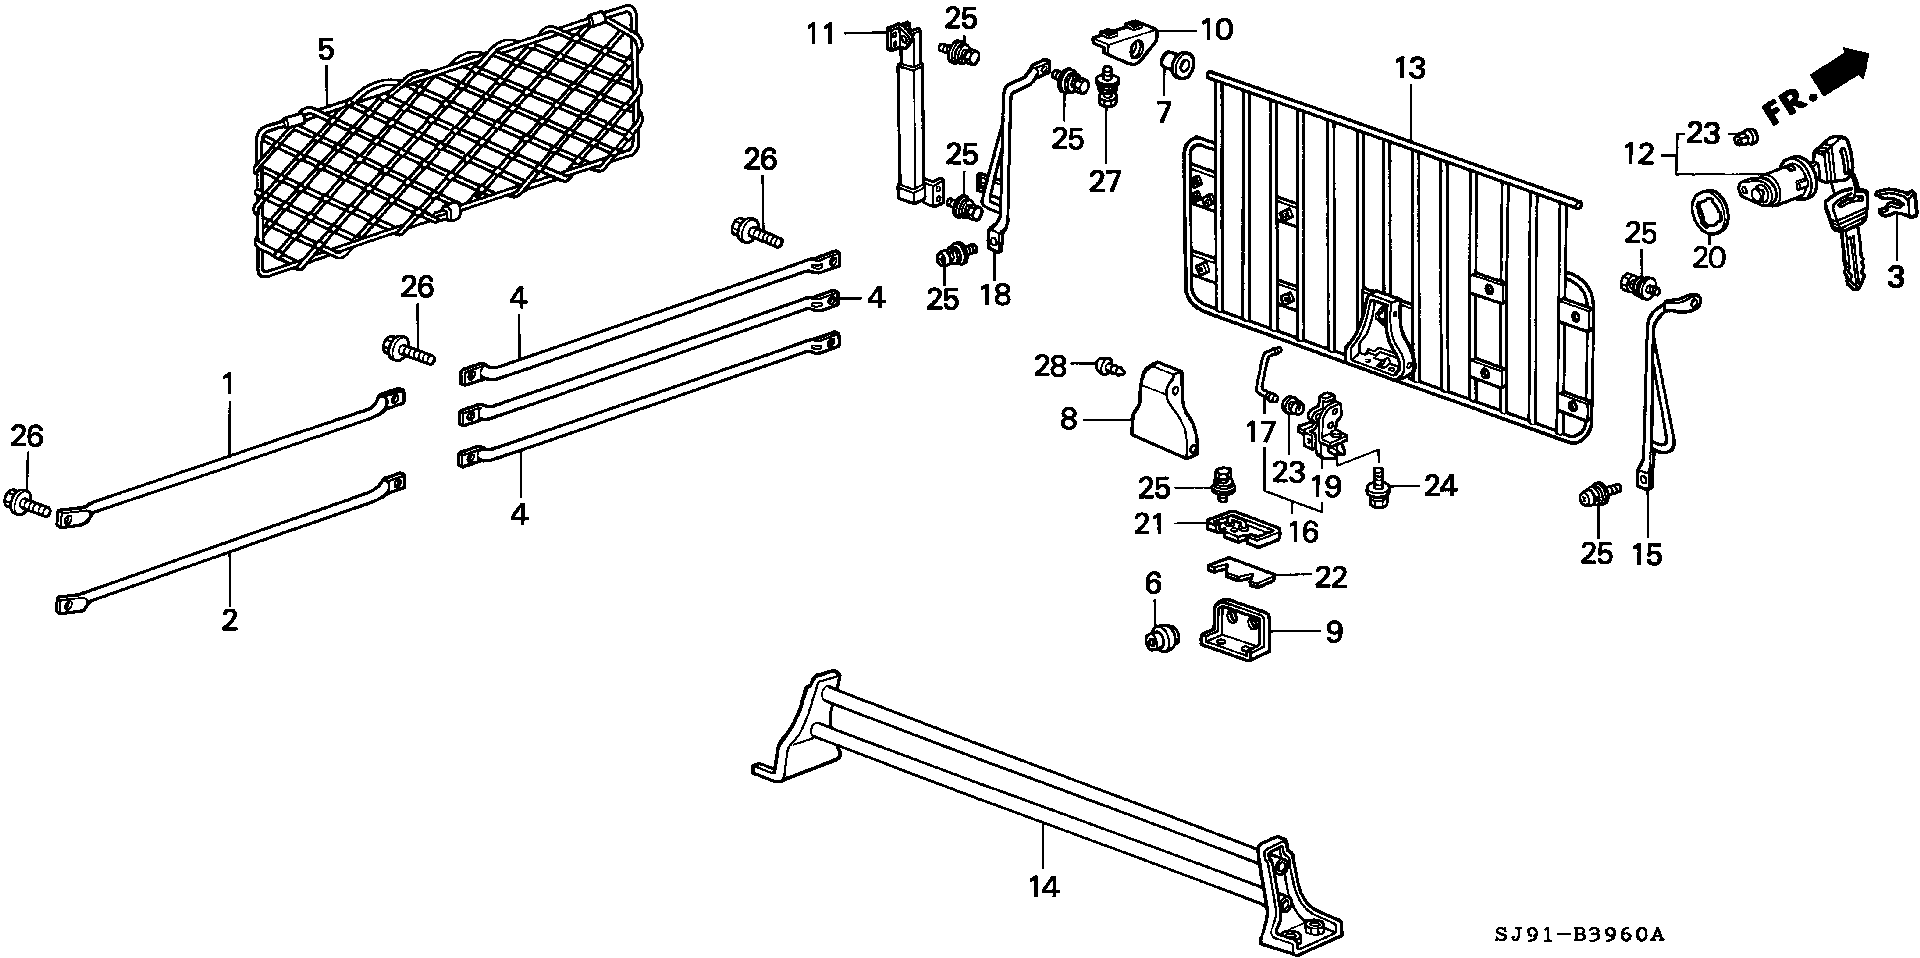 BACK CABIN GATE(  POSTAL. DIRECTION )